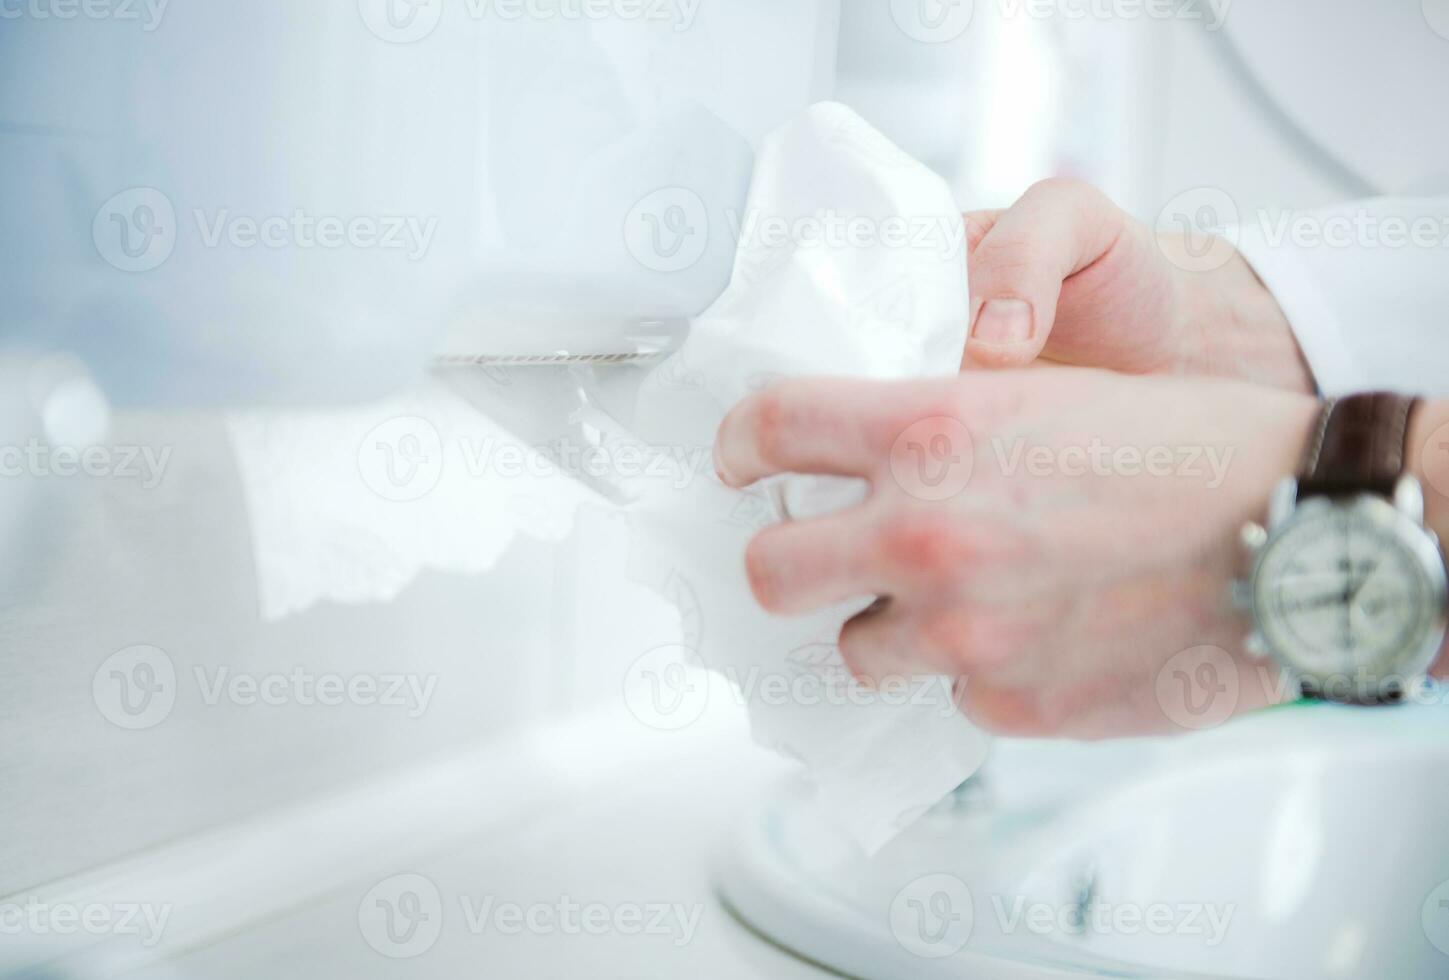 papper handduk dispenser i toalett. foto